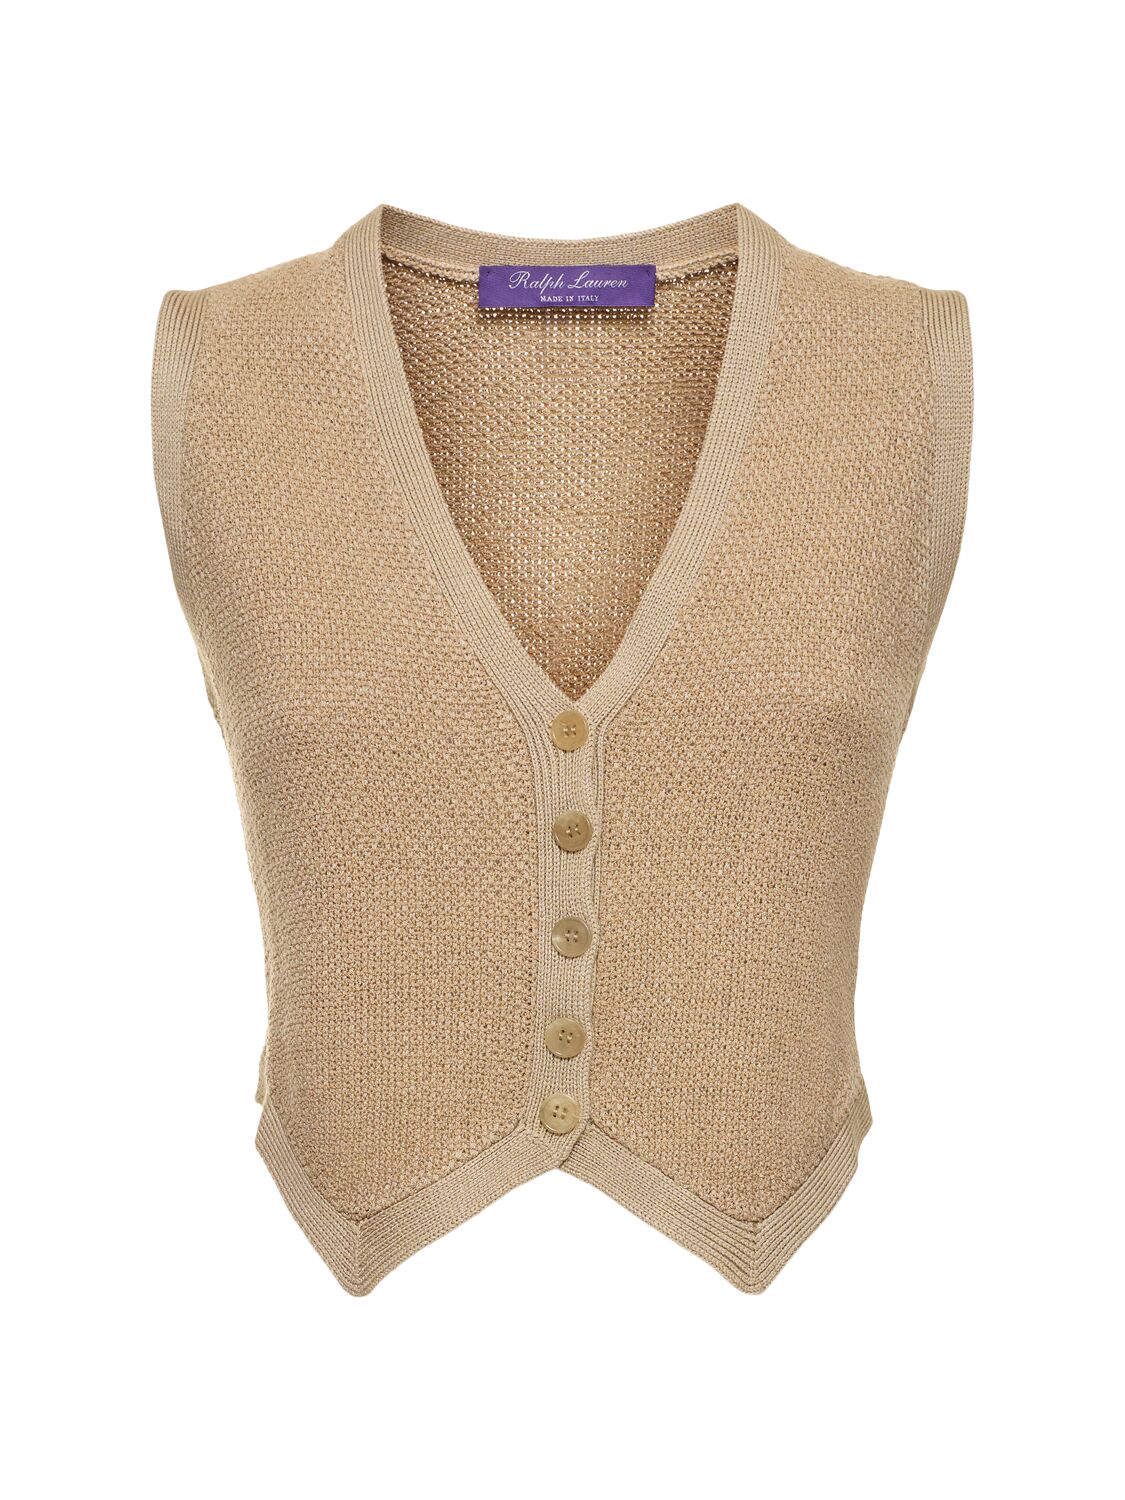 Ralph Lauren Silk Tweed Vest In Beige